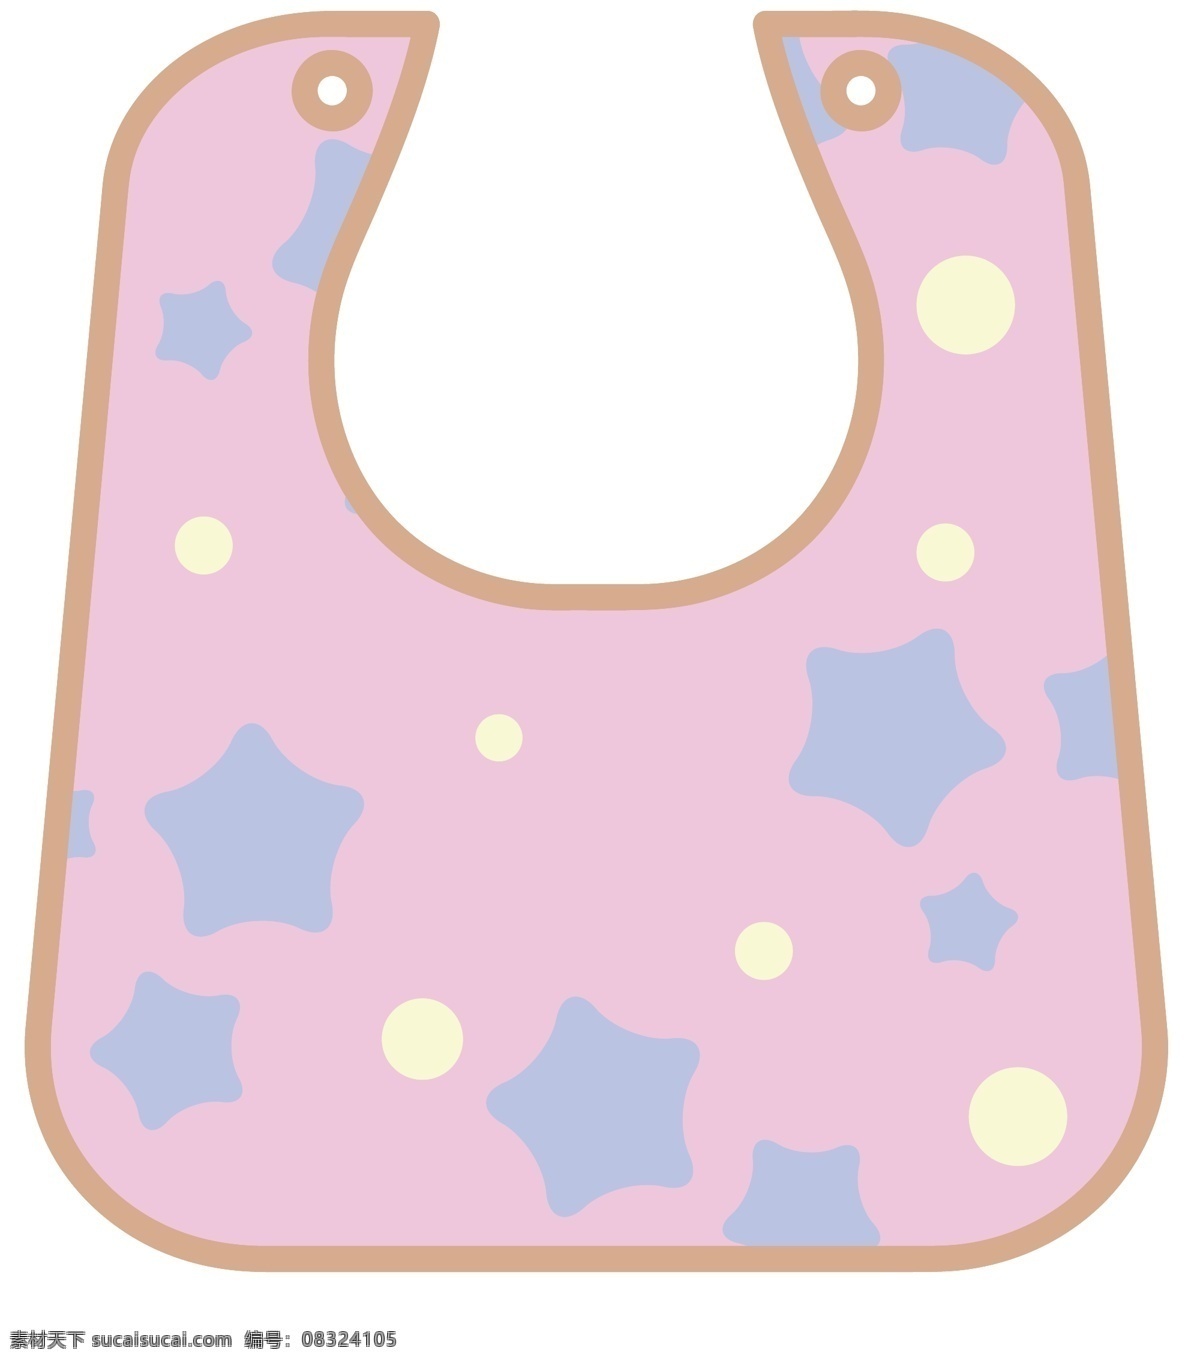 婴儿用品 口水 巾 插画 红色的口水巾 卡通插画 婴儿产品 婴儿物品 婴儿插画 婴儿口水巾